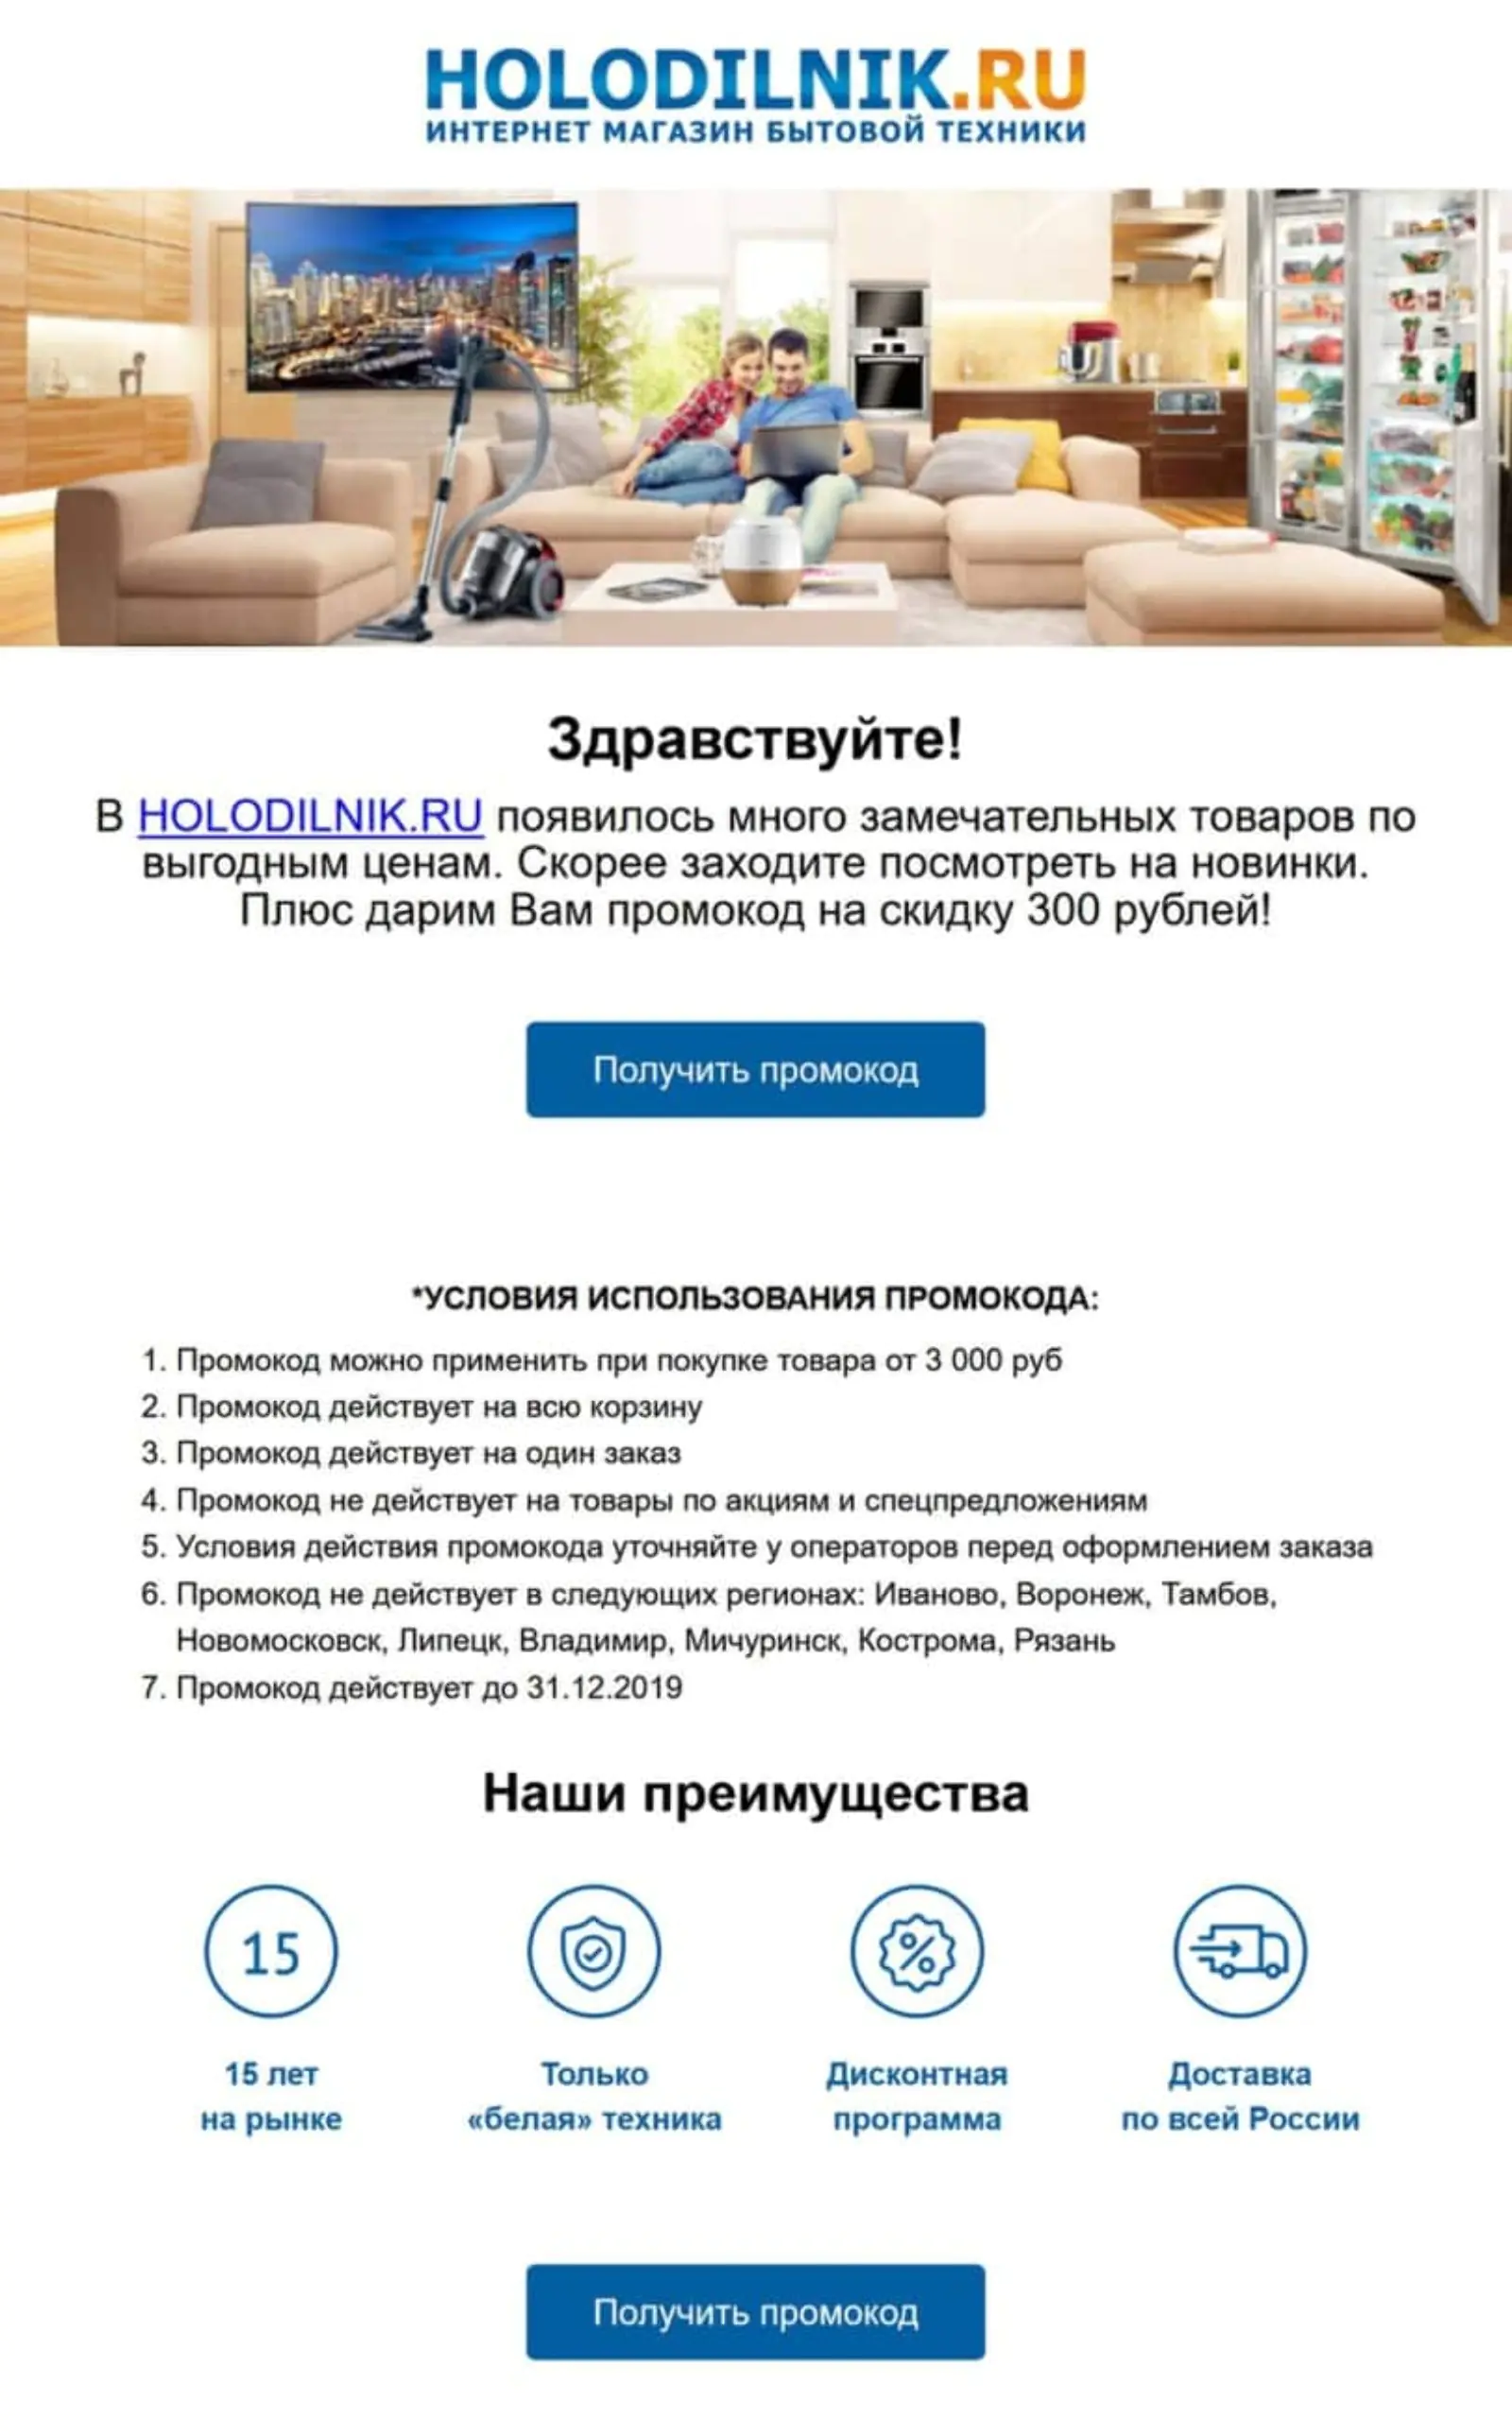 Holodilnik.ru отправляет клиентам оттока письмо с кнопкой для получения промокода